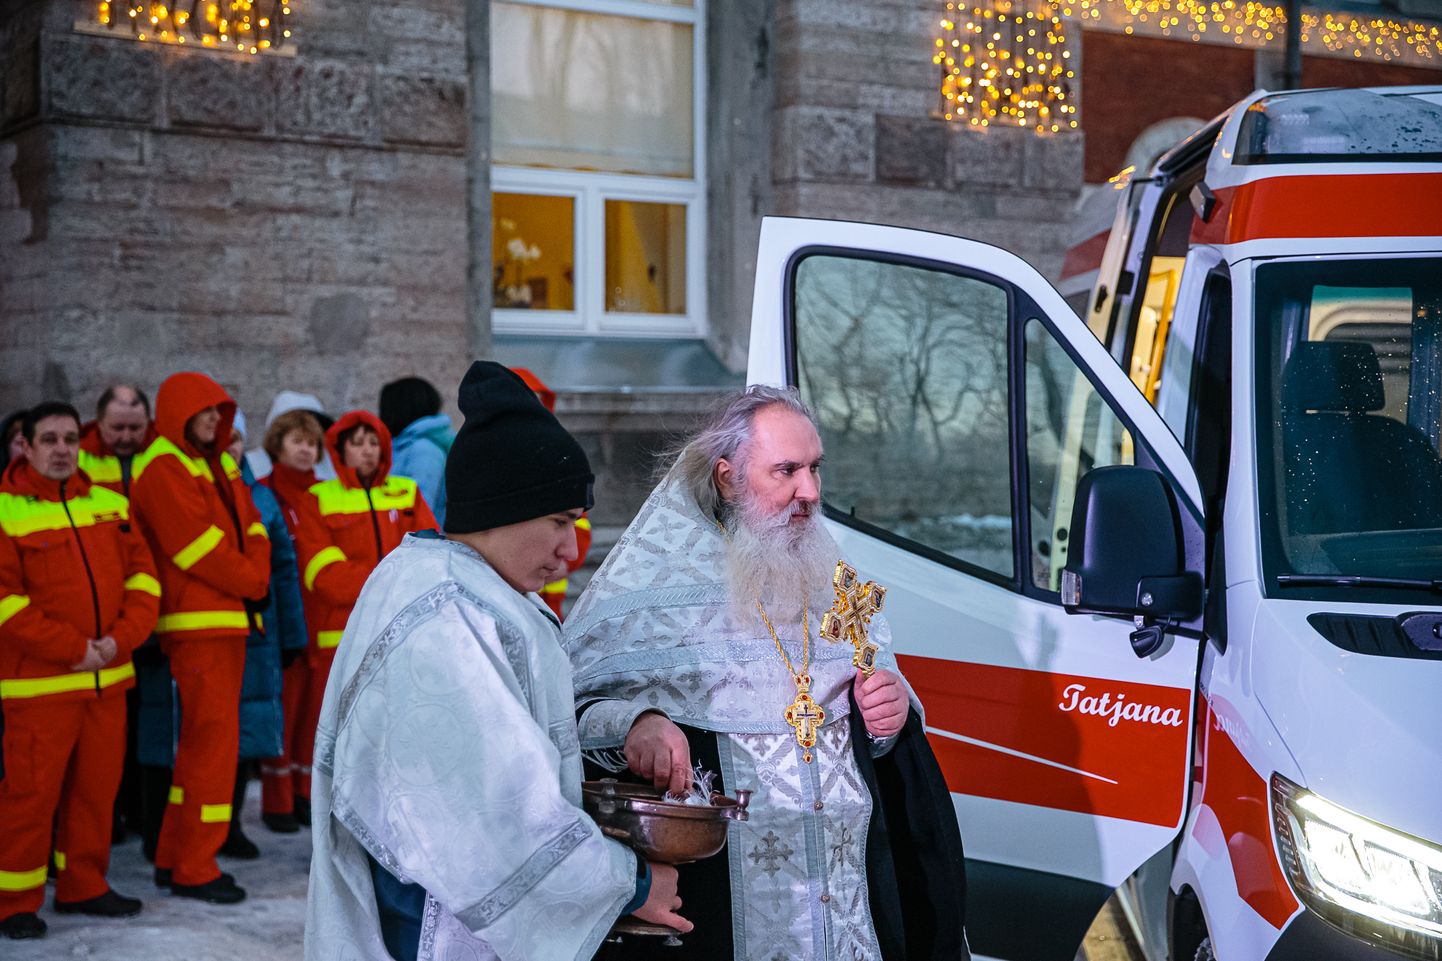 Õigeusu vaimulik õnnistas kaks uut reanimobiili sisse Narva haigla peahoone ees. Et tseremoonia peeti 25. jaanuaril, mis õigeusu kalendri järgi on tatjanapäev, sai üks masinatest nimeks Tatjana ja teine Maria.